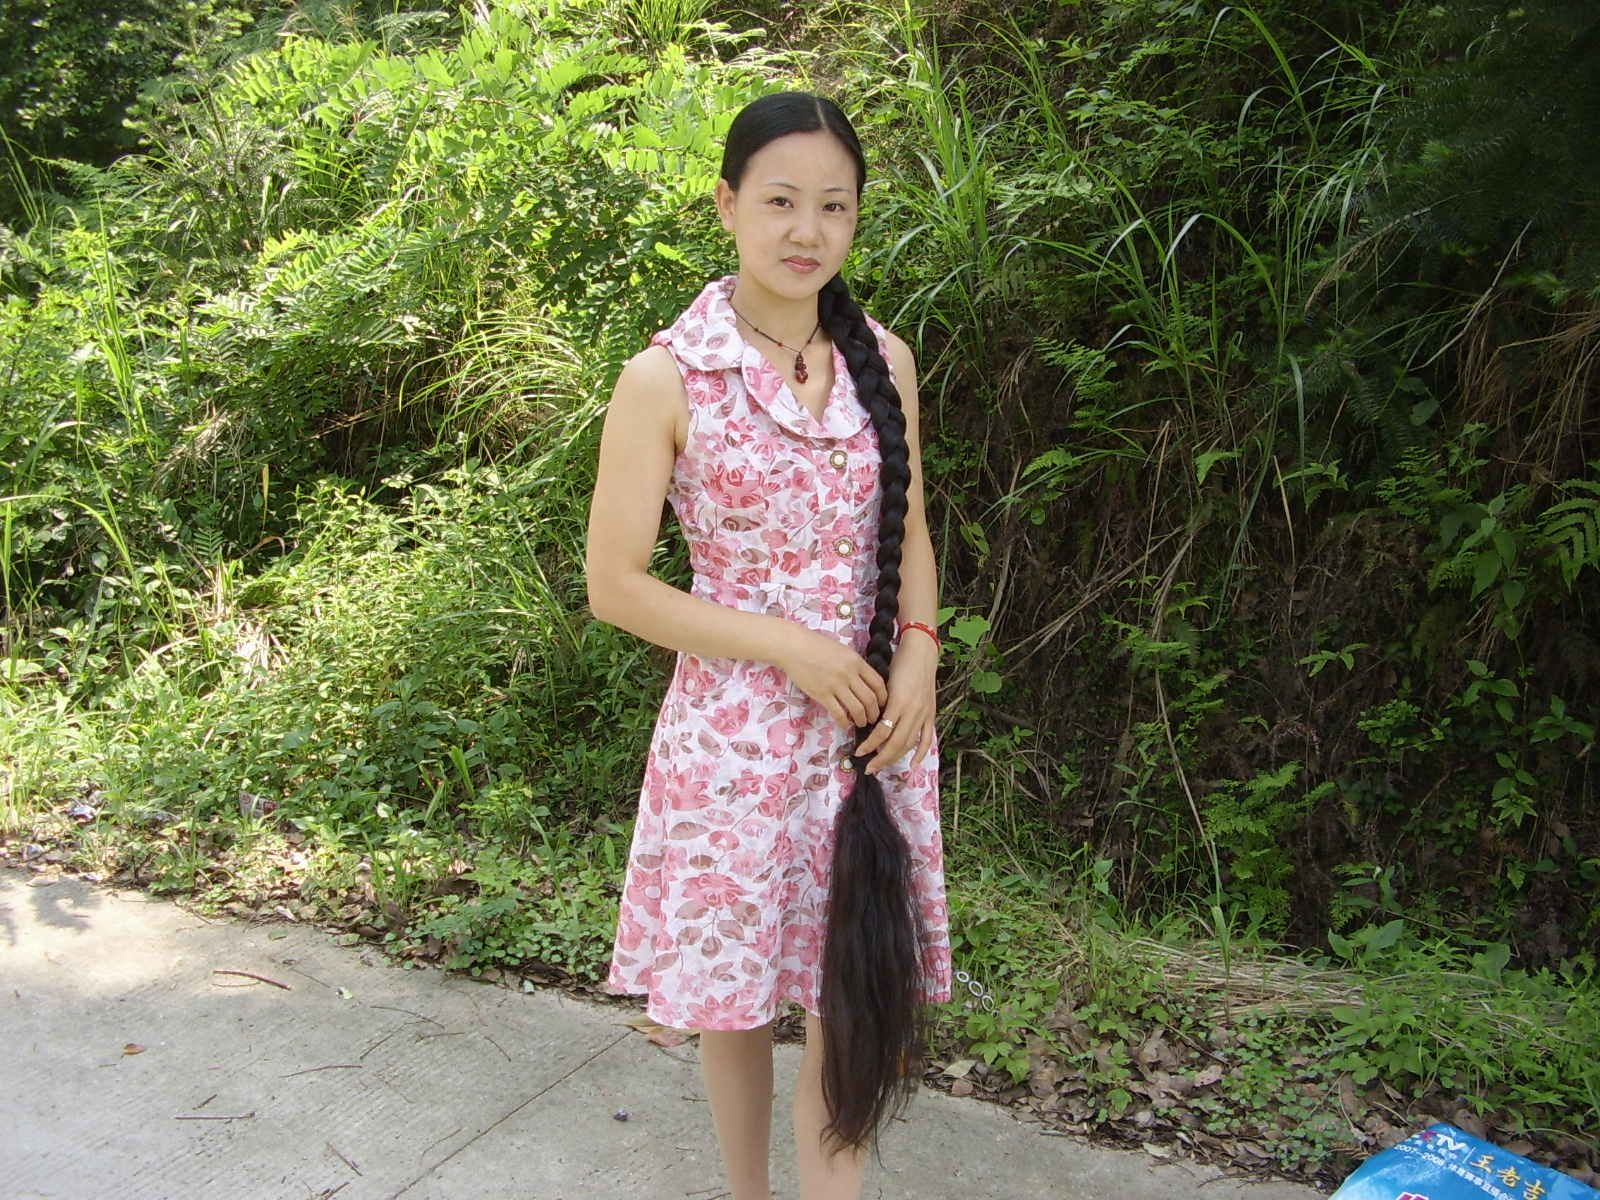 Photos of Liu Xiaoling in 2008